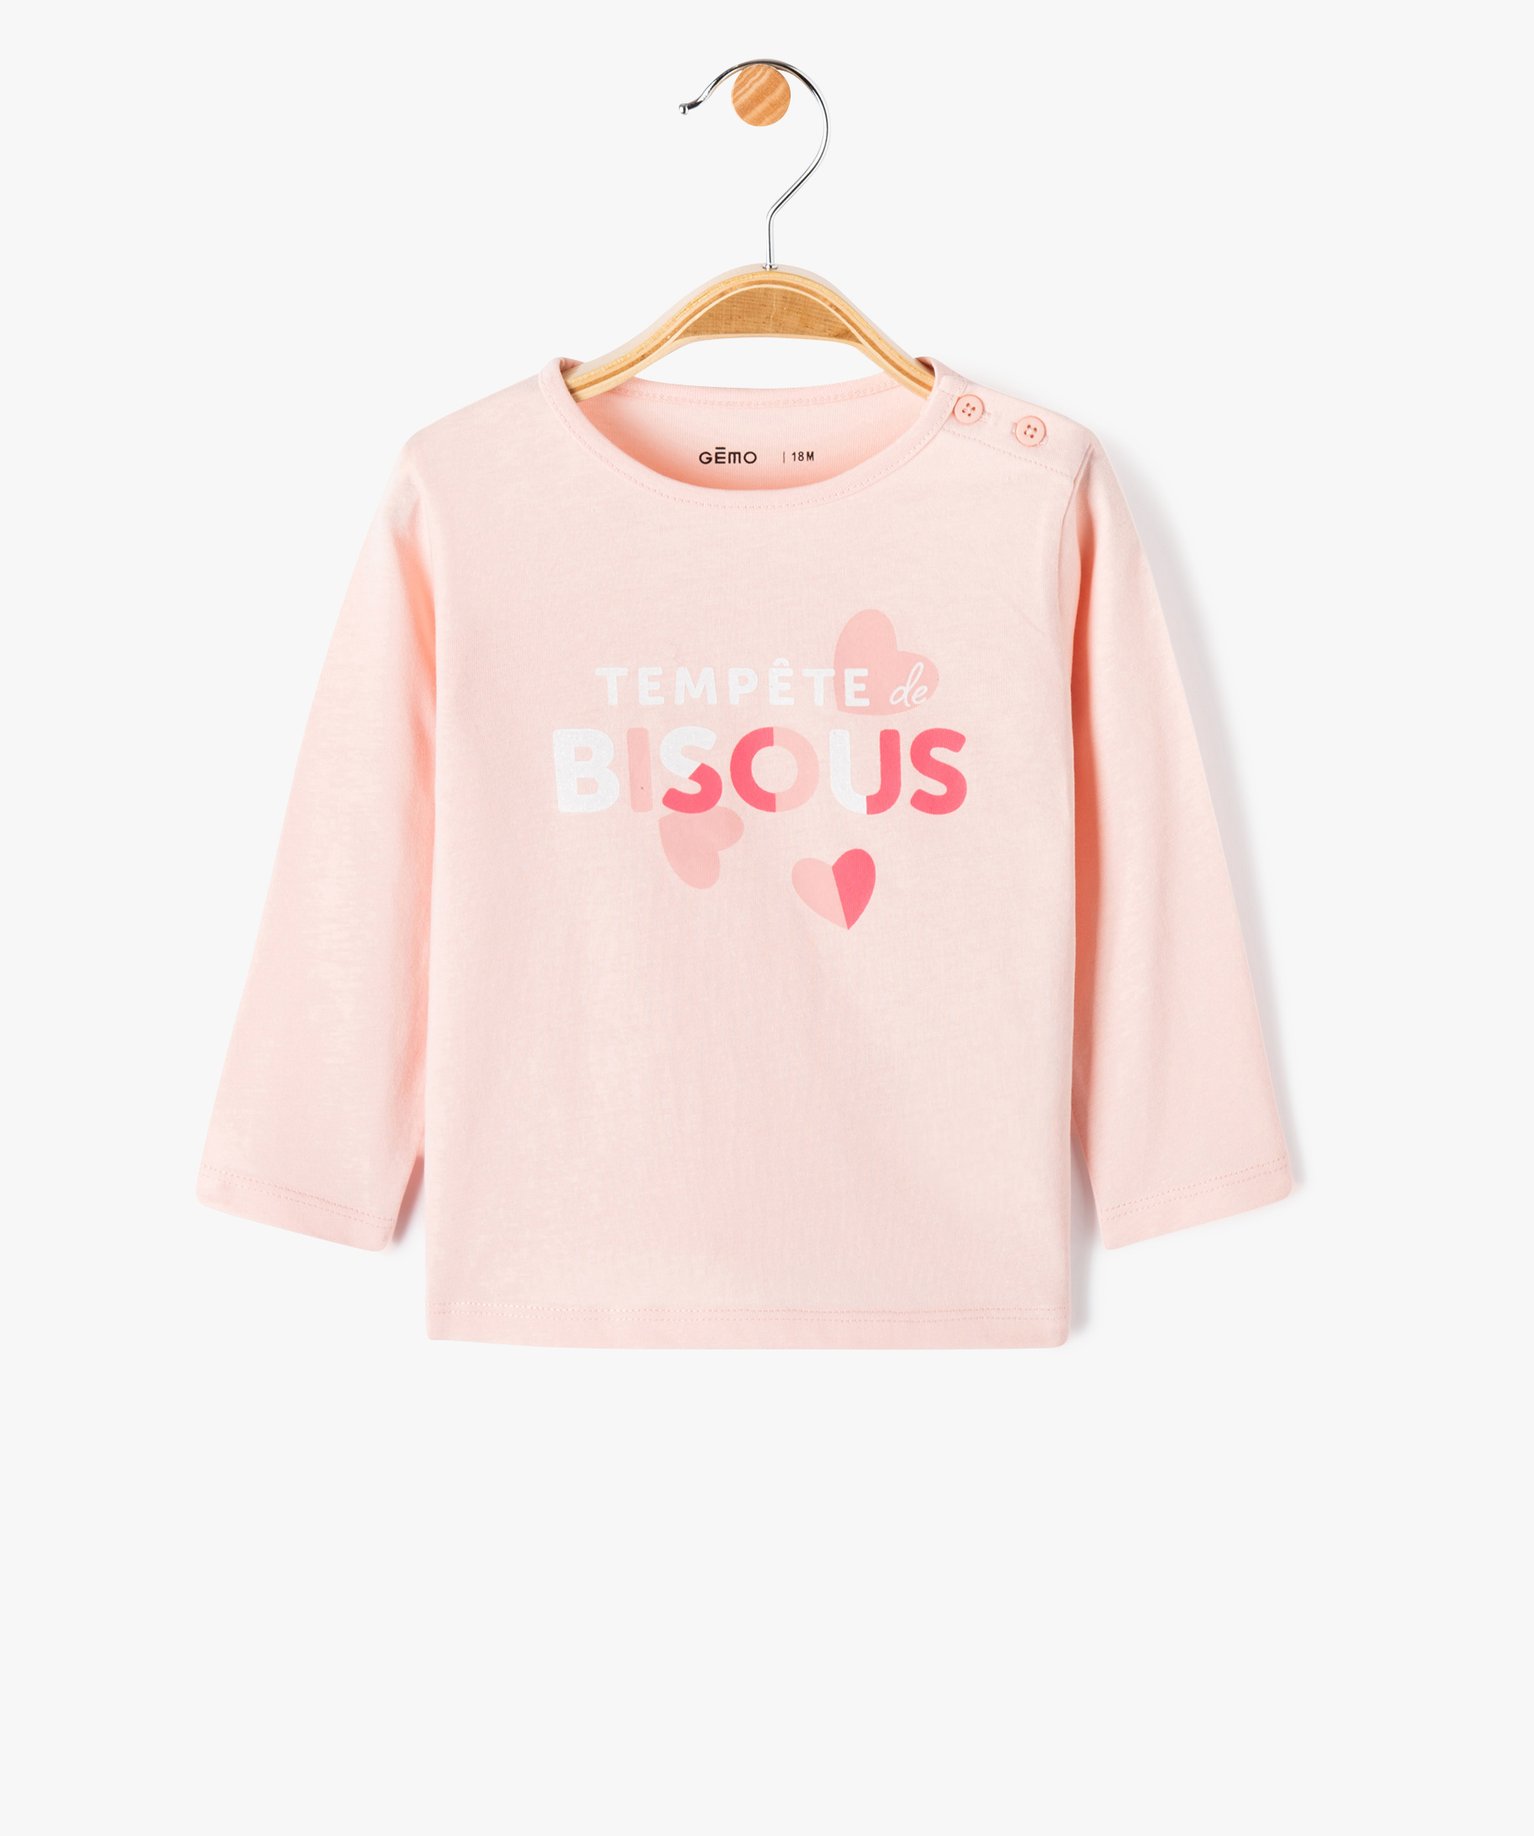 Tee-shirt à manches longues à message bébé fille - 3M - rose - GEMO